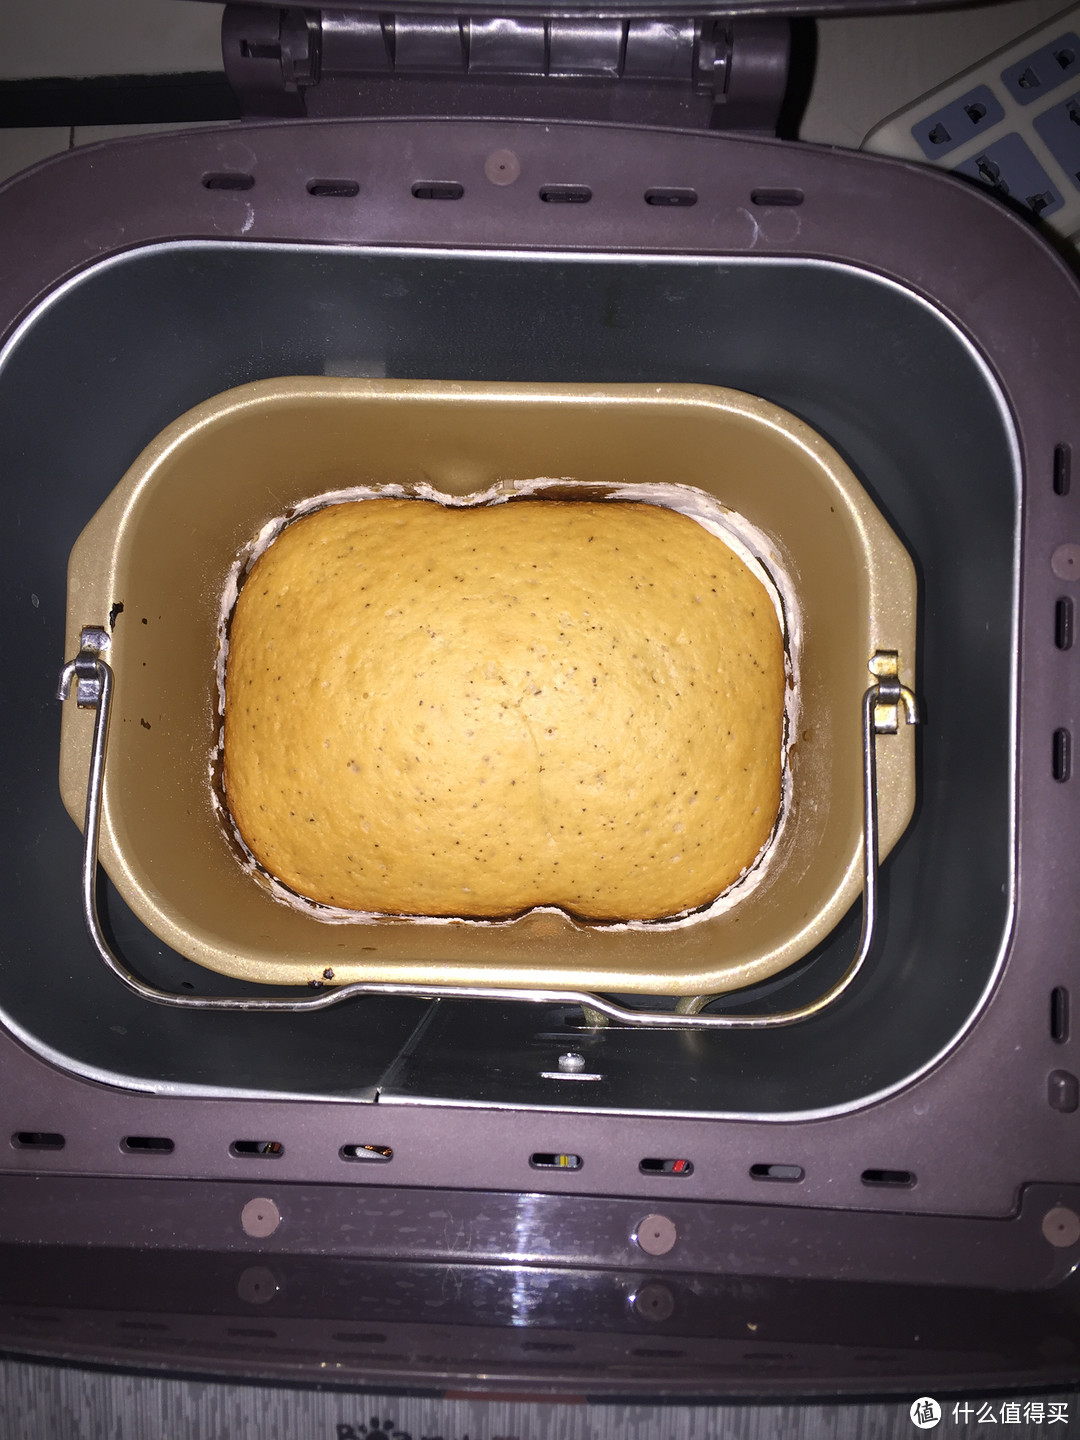 一个简单的早餐面包的出炉过程